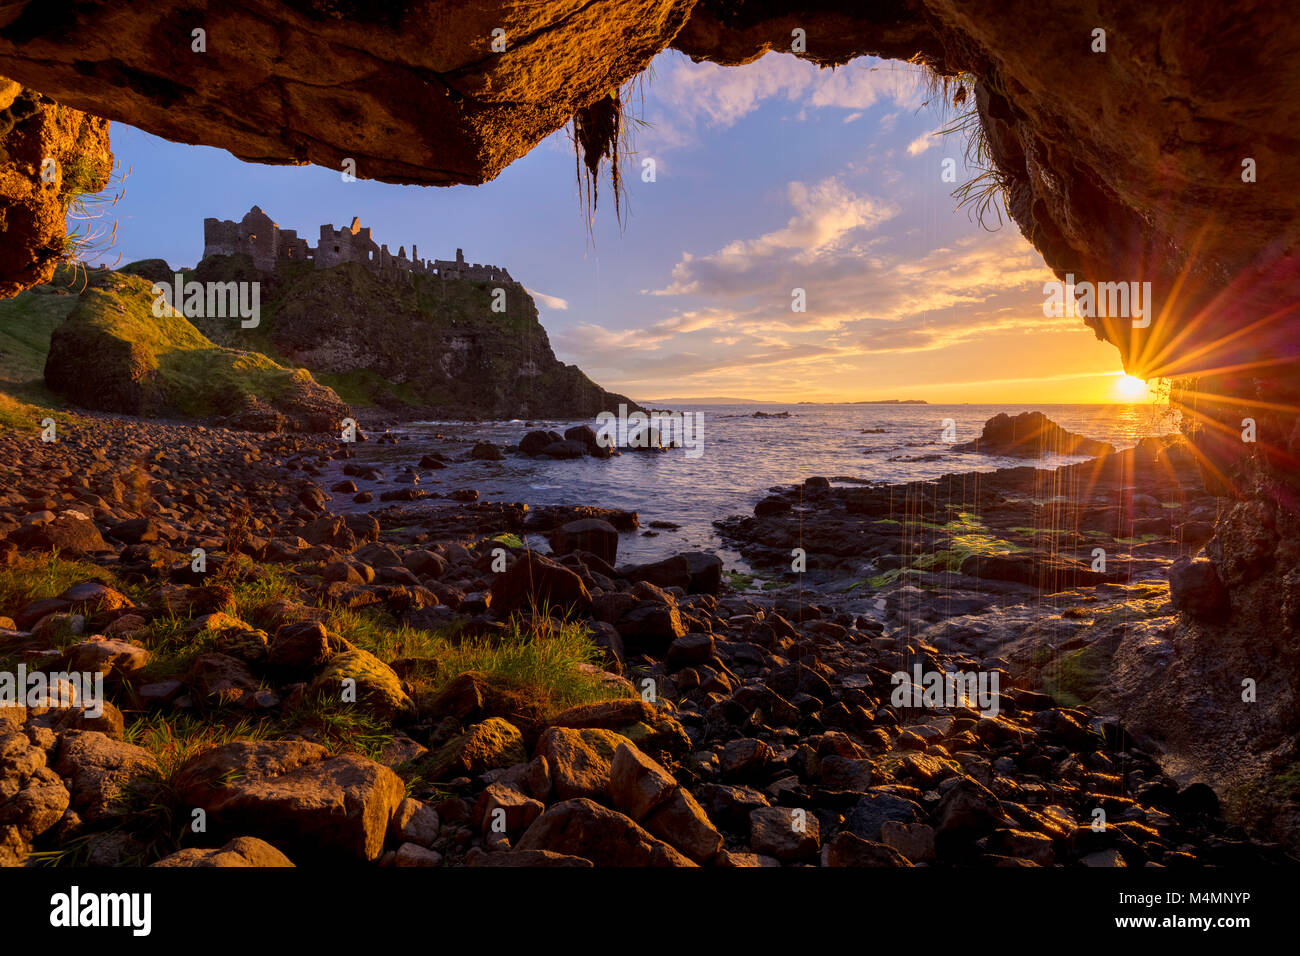 Coucher de soleil sur le château de Dunluce depuis l'intérieur d'une grotte marine. Côte de Causeway, le comté d'Antrim, en Irlande du Nord. Banque D'Images